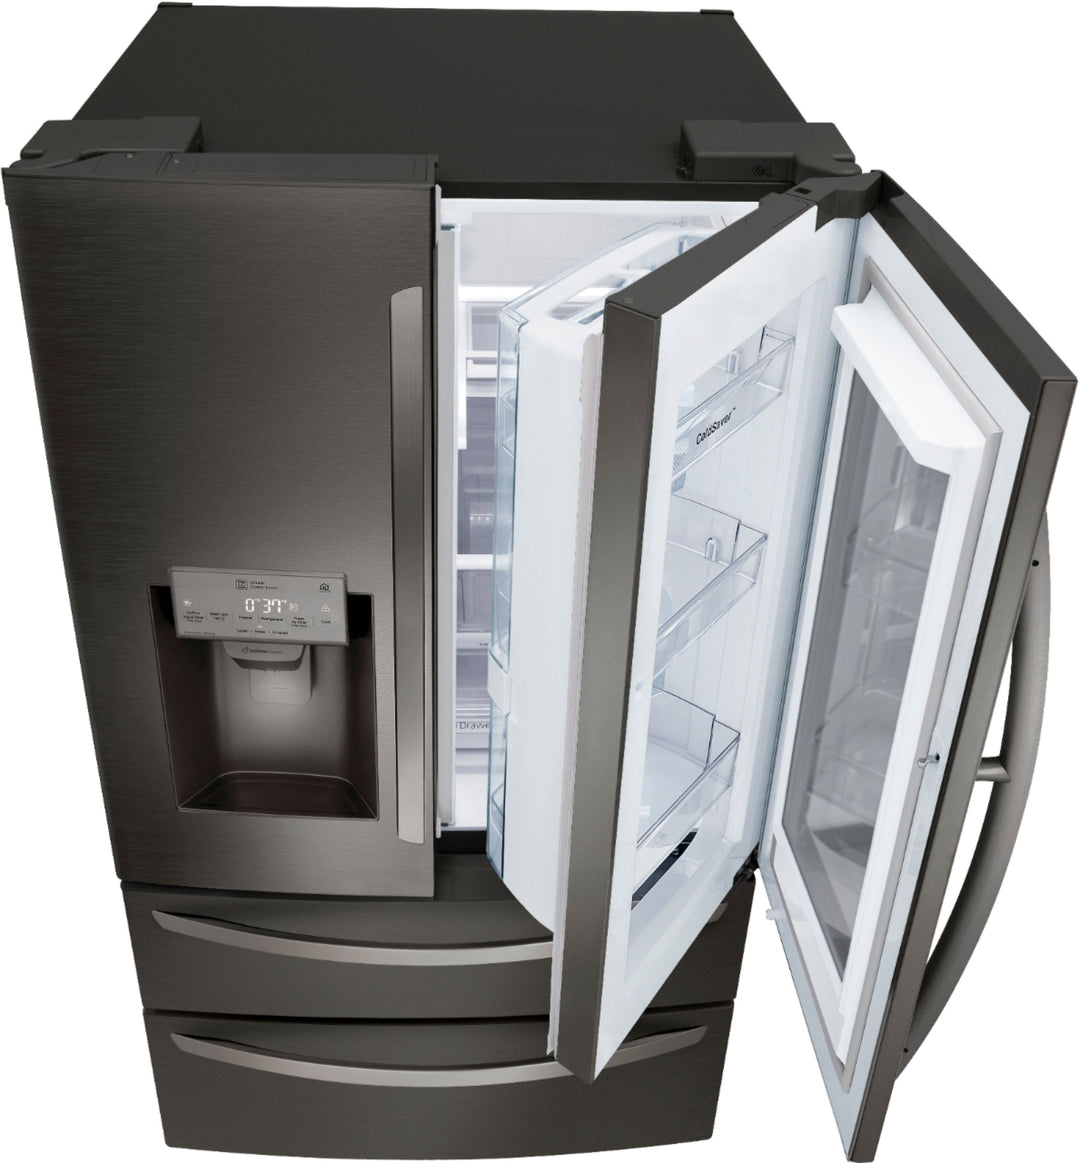 LG - 27.8 Cu. Ft. 4-Door French Door Smart Refrigerator with InstaView - Black stainless steel_2